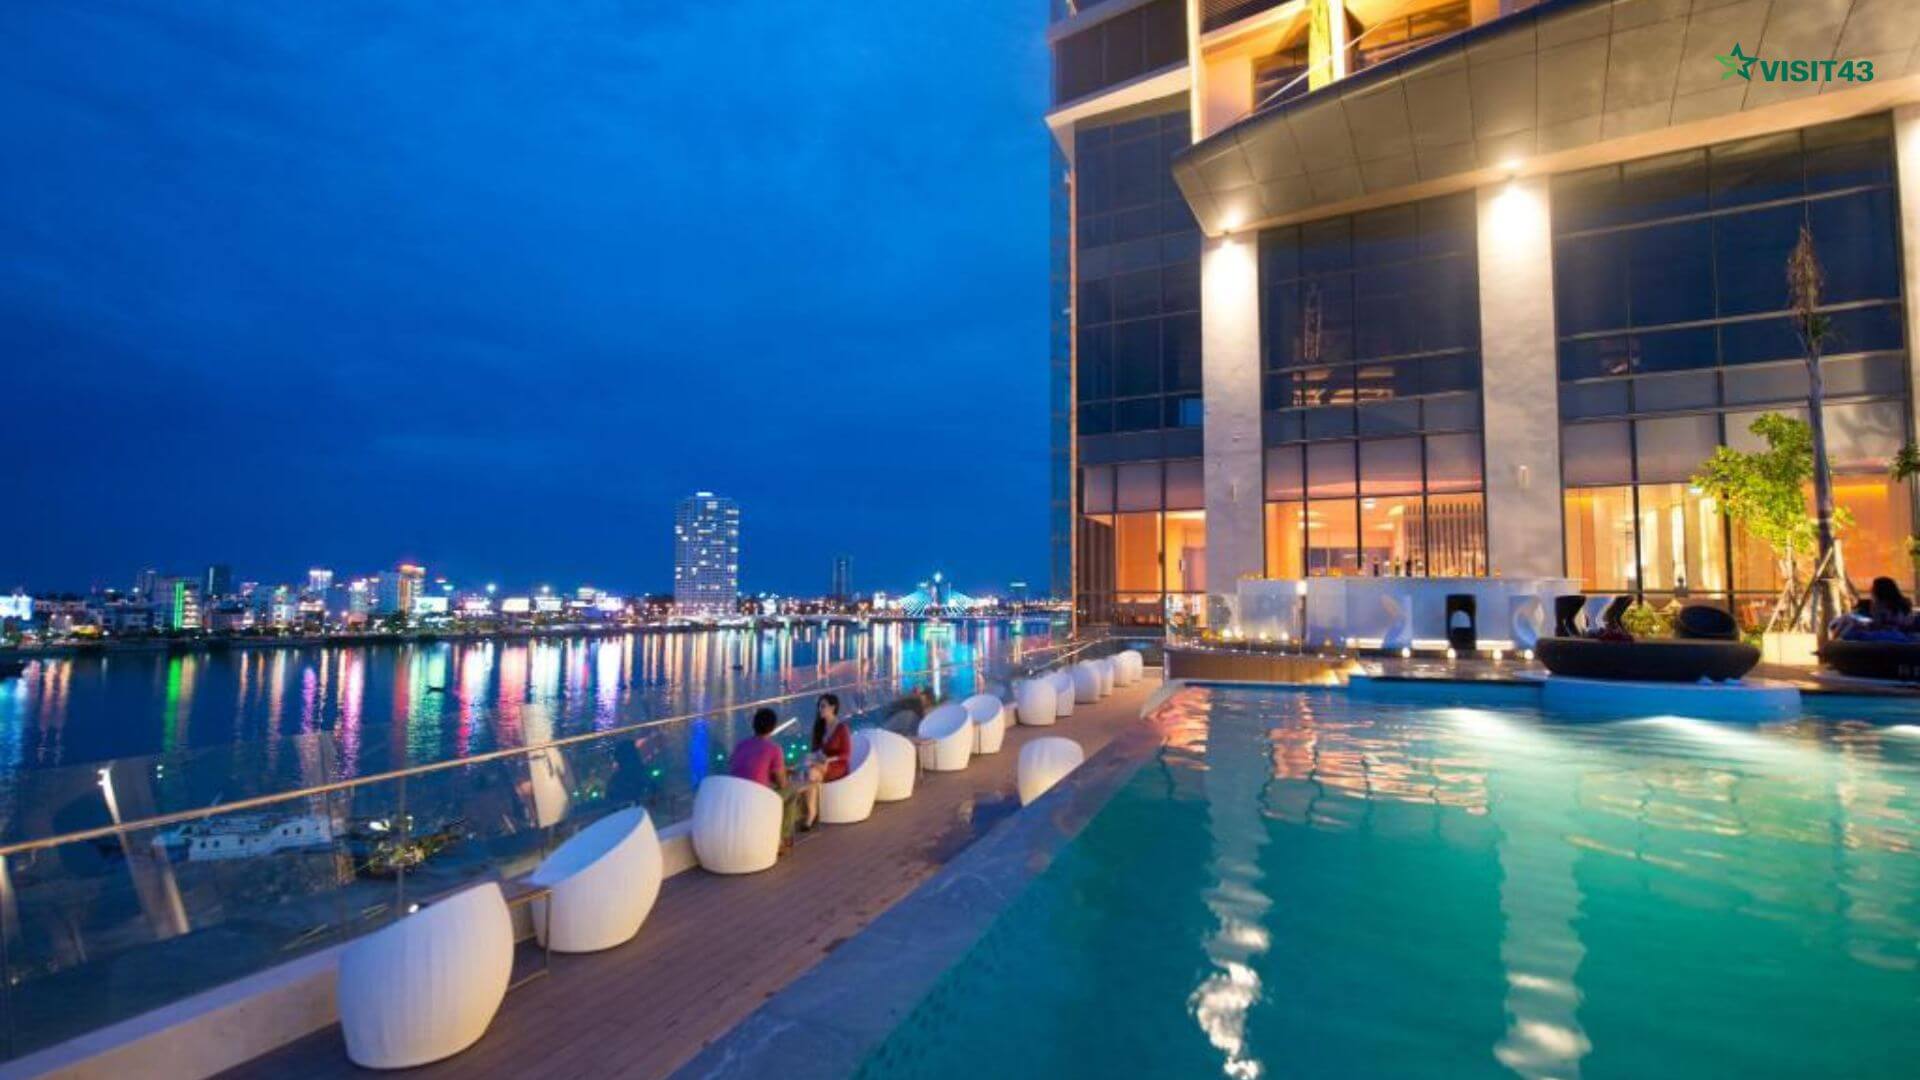 Top 15 khách sạn có view xem bắn pháo hoa tại Đà Nẵng cực đẹp